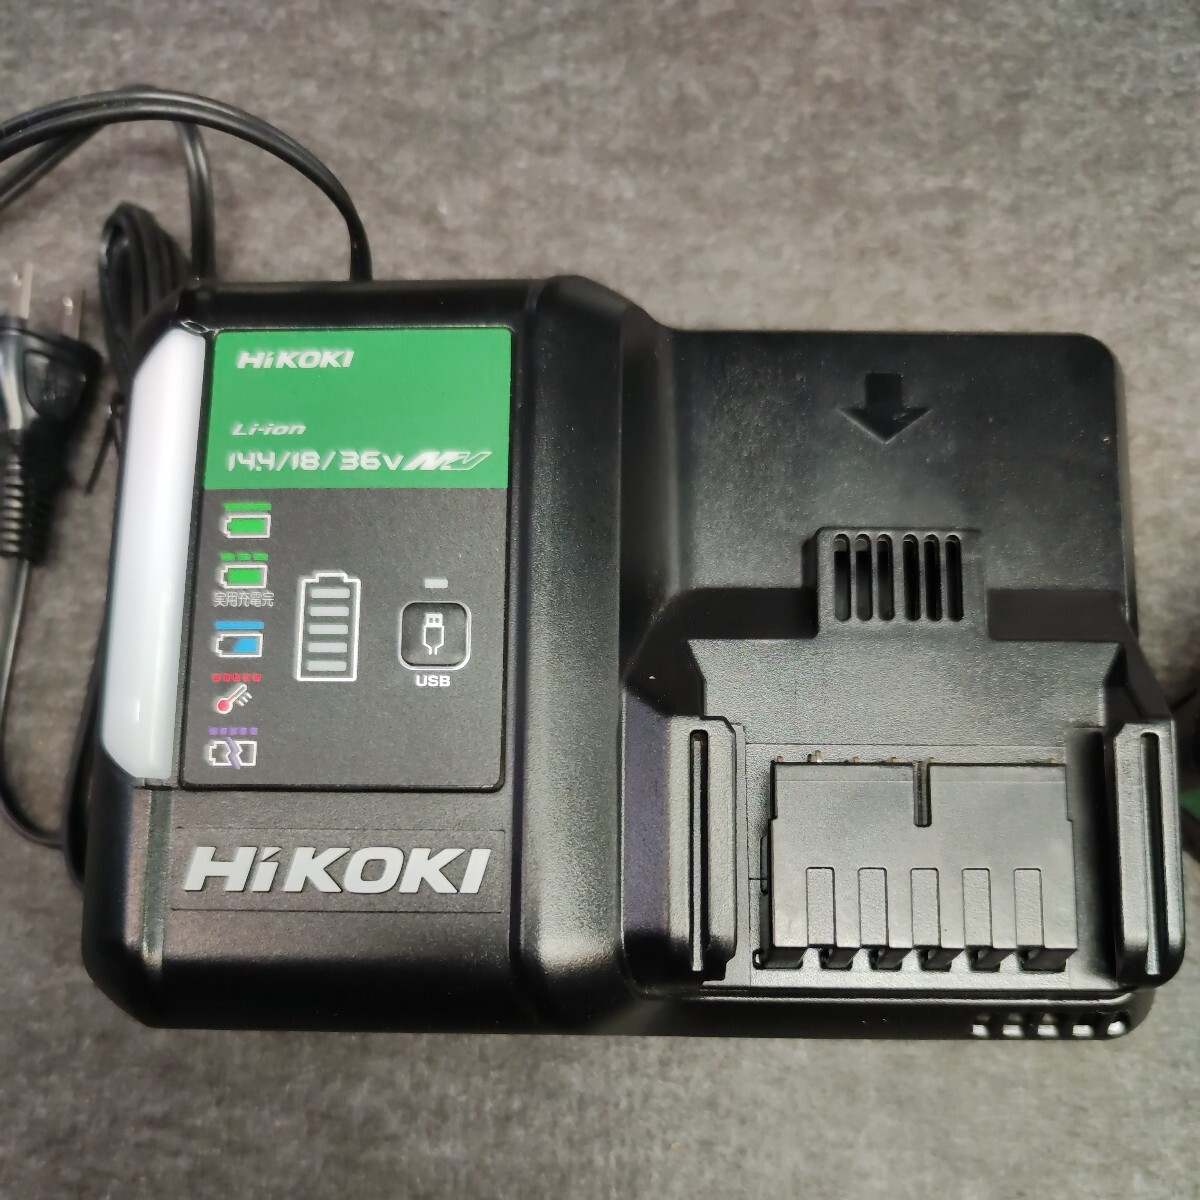 HiKOKI 急速充電器 uc18ydl2 新品未使用 マルチボルトBSL36a18付きの画像2